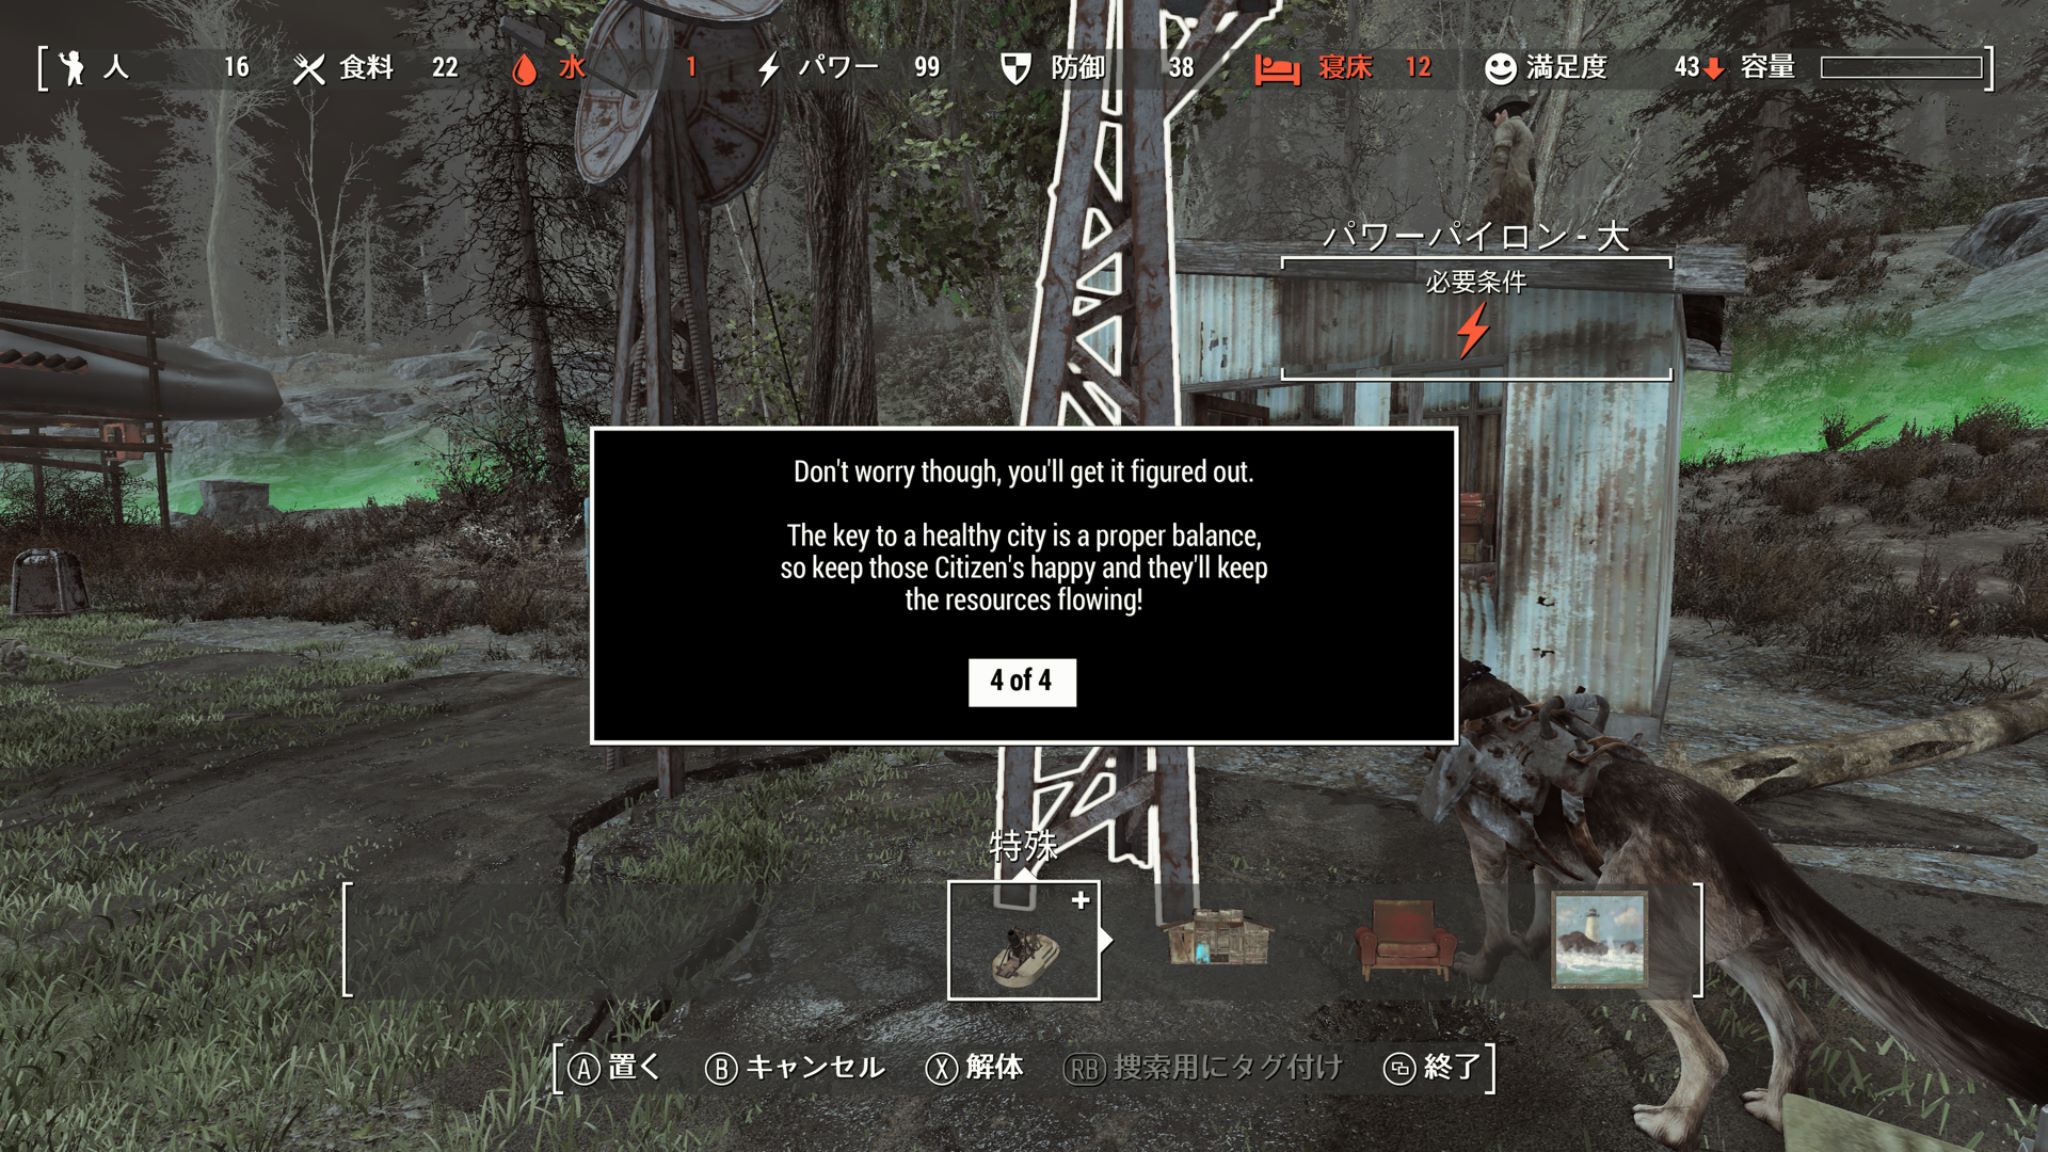 Kyogo Fallout 4のスクリーンショットを撮ったよ Xbox Fallout4 箱ショット